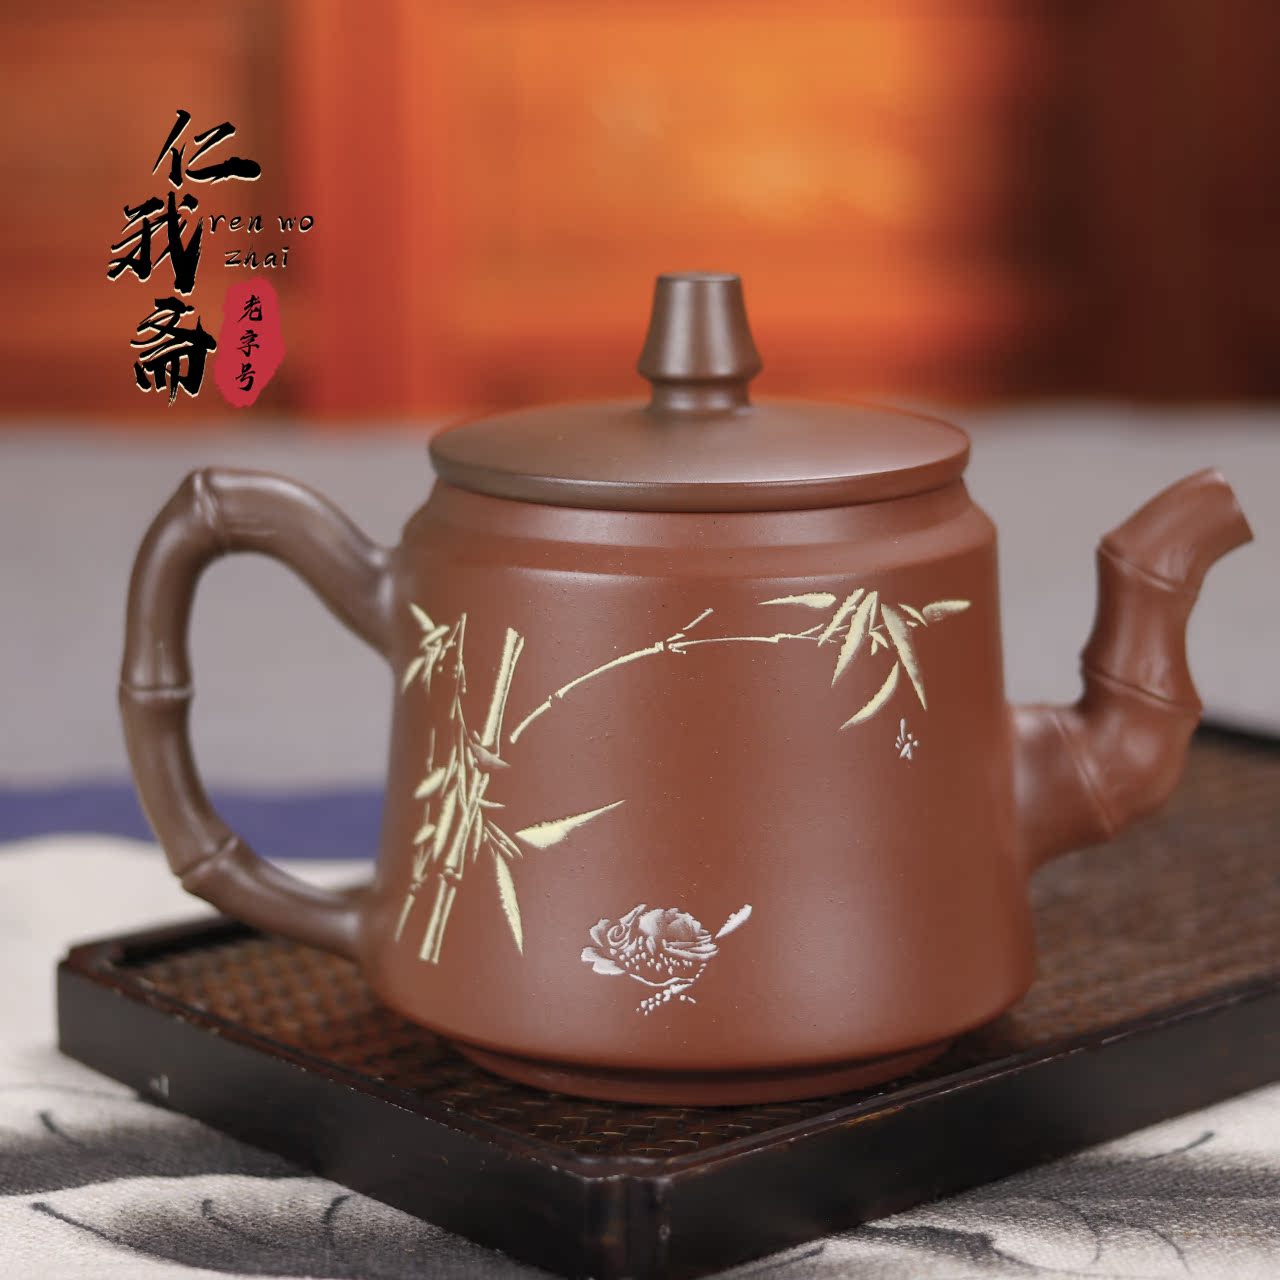 共785 件钦州坭兴陶大师茶壶相关商品